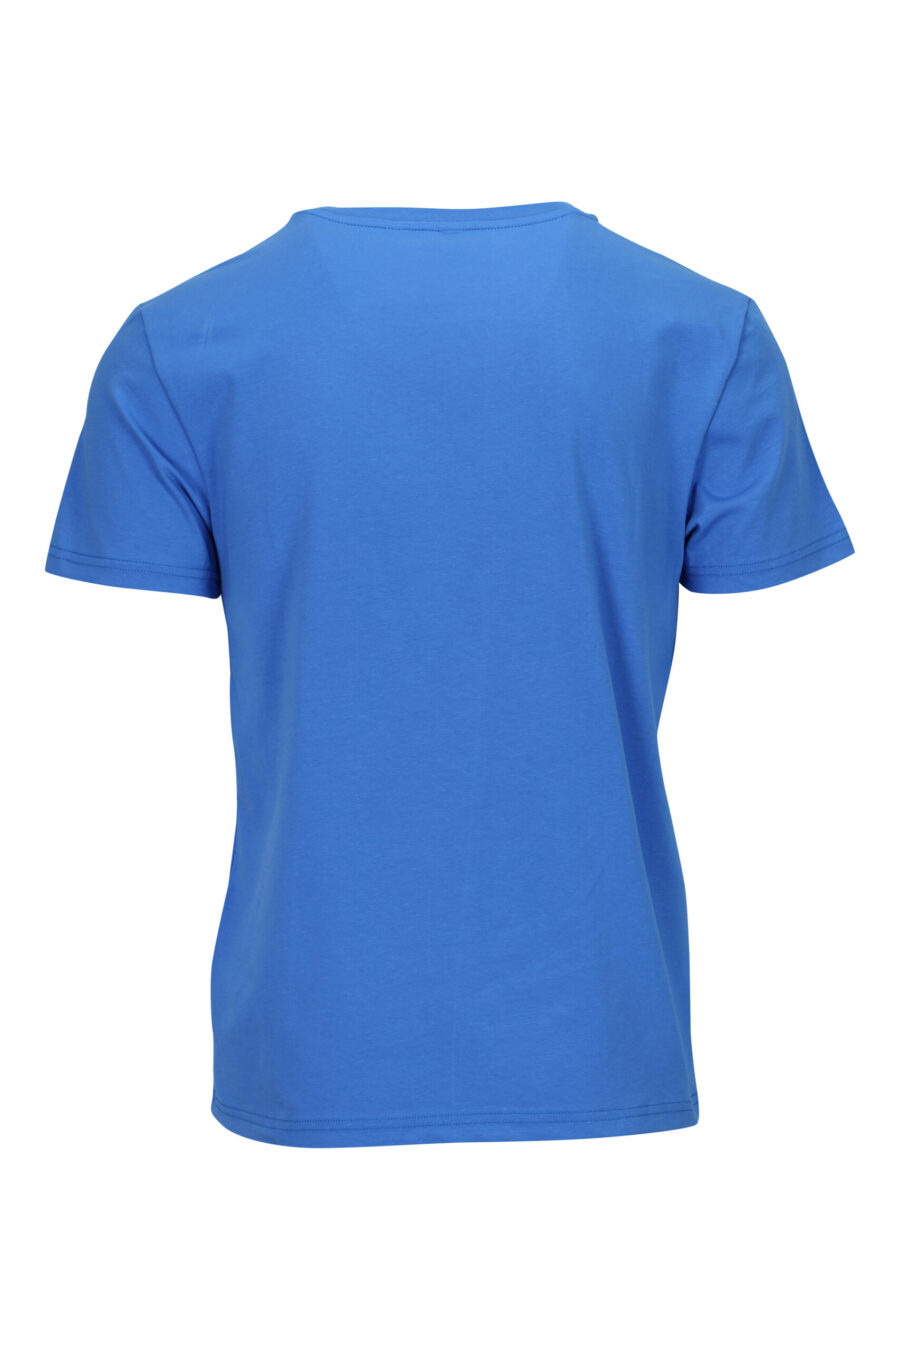 Blaues T-Shirt mit Minilogue "schwimmen" - 667113673417 1 skaliert